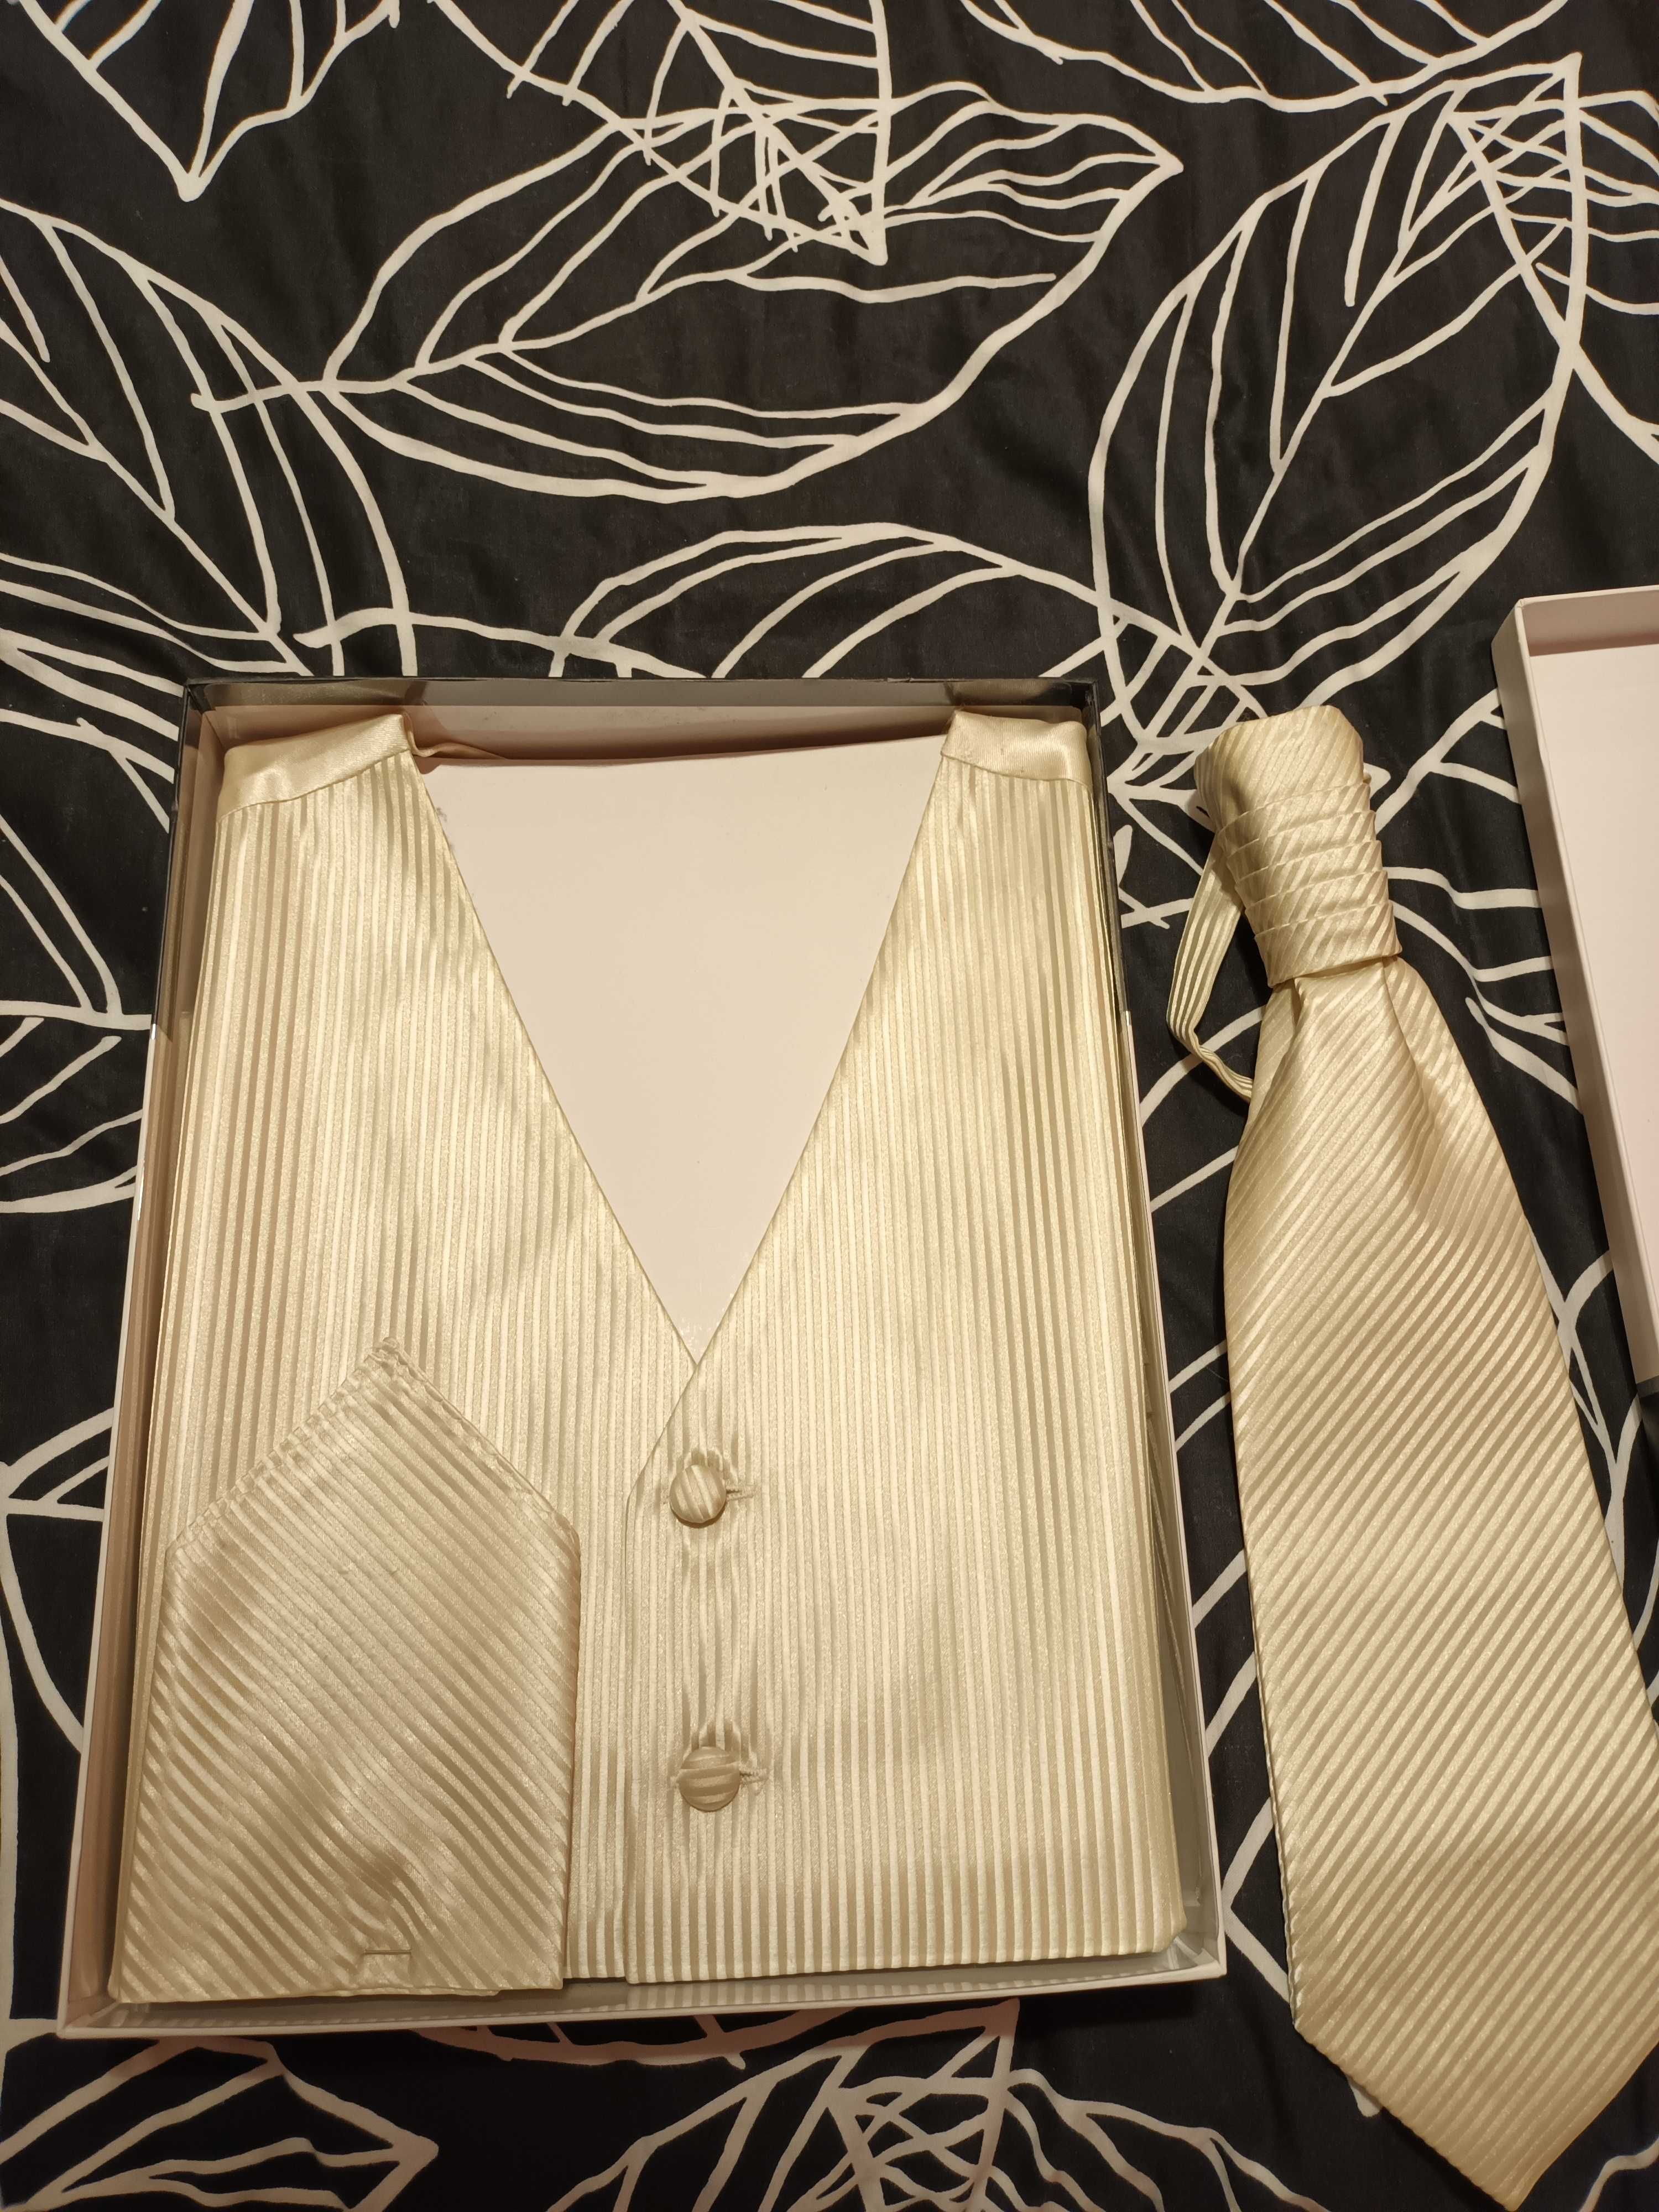 Kamizelka krawat poszetka komplet ślubny ślubna ecru kremowy